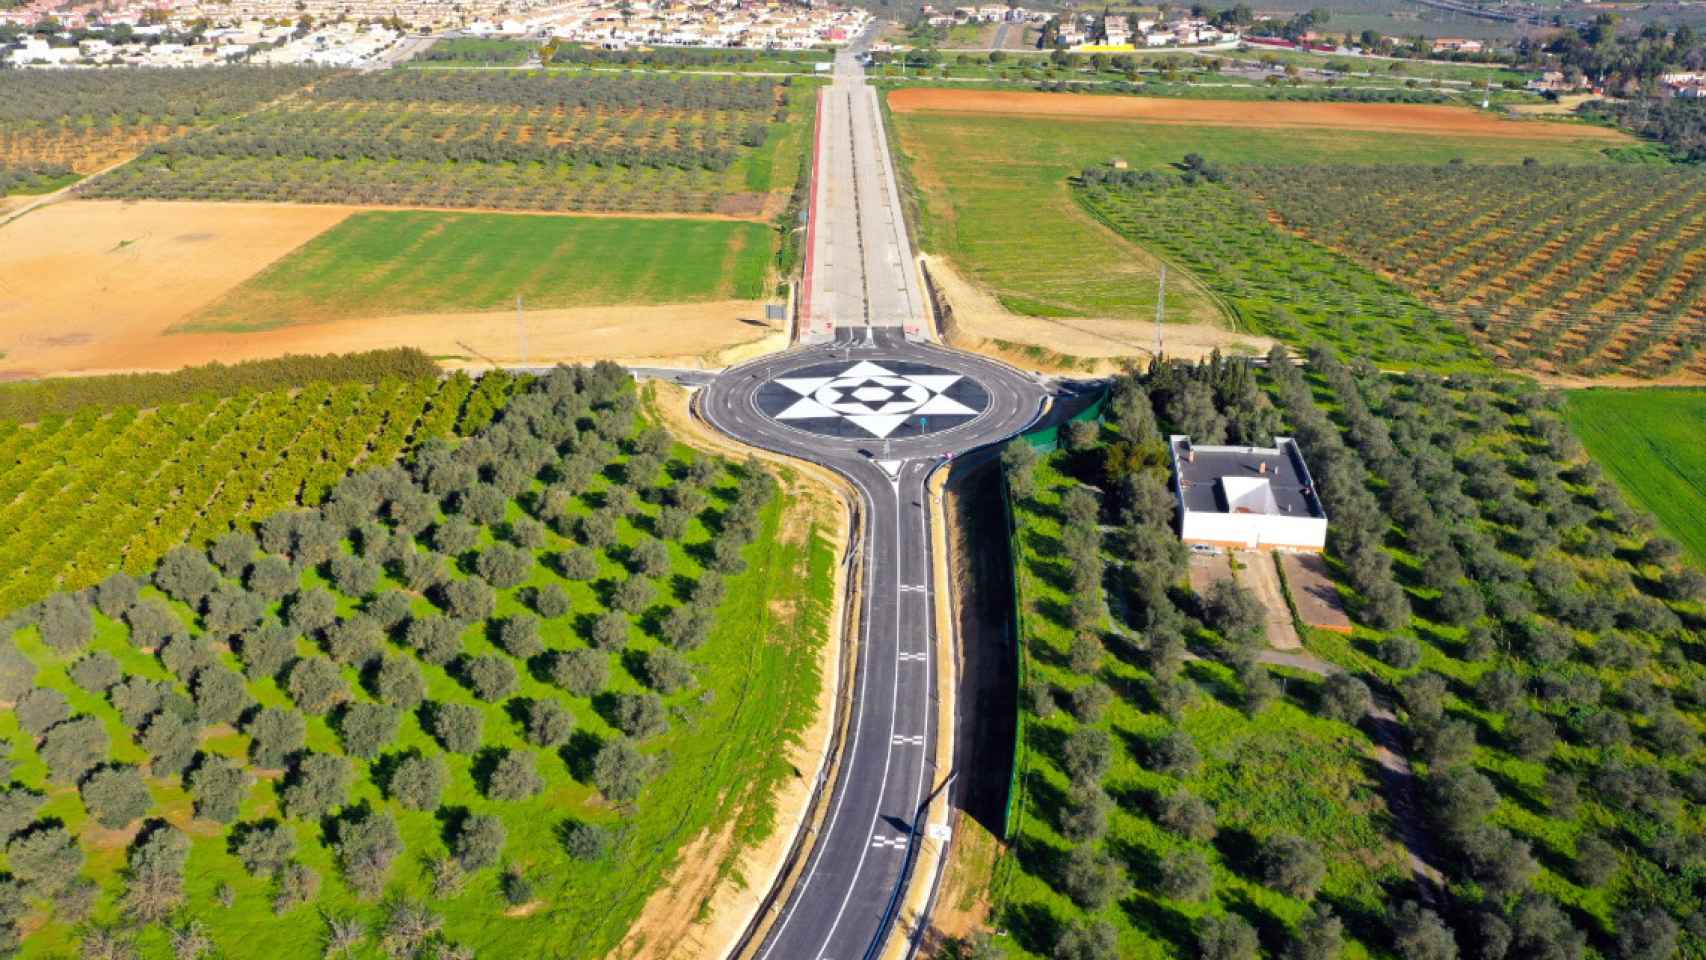 La obra que va a inaugurar Puente este lunes en Sevilla.